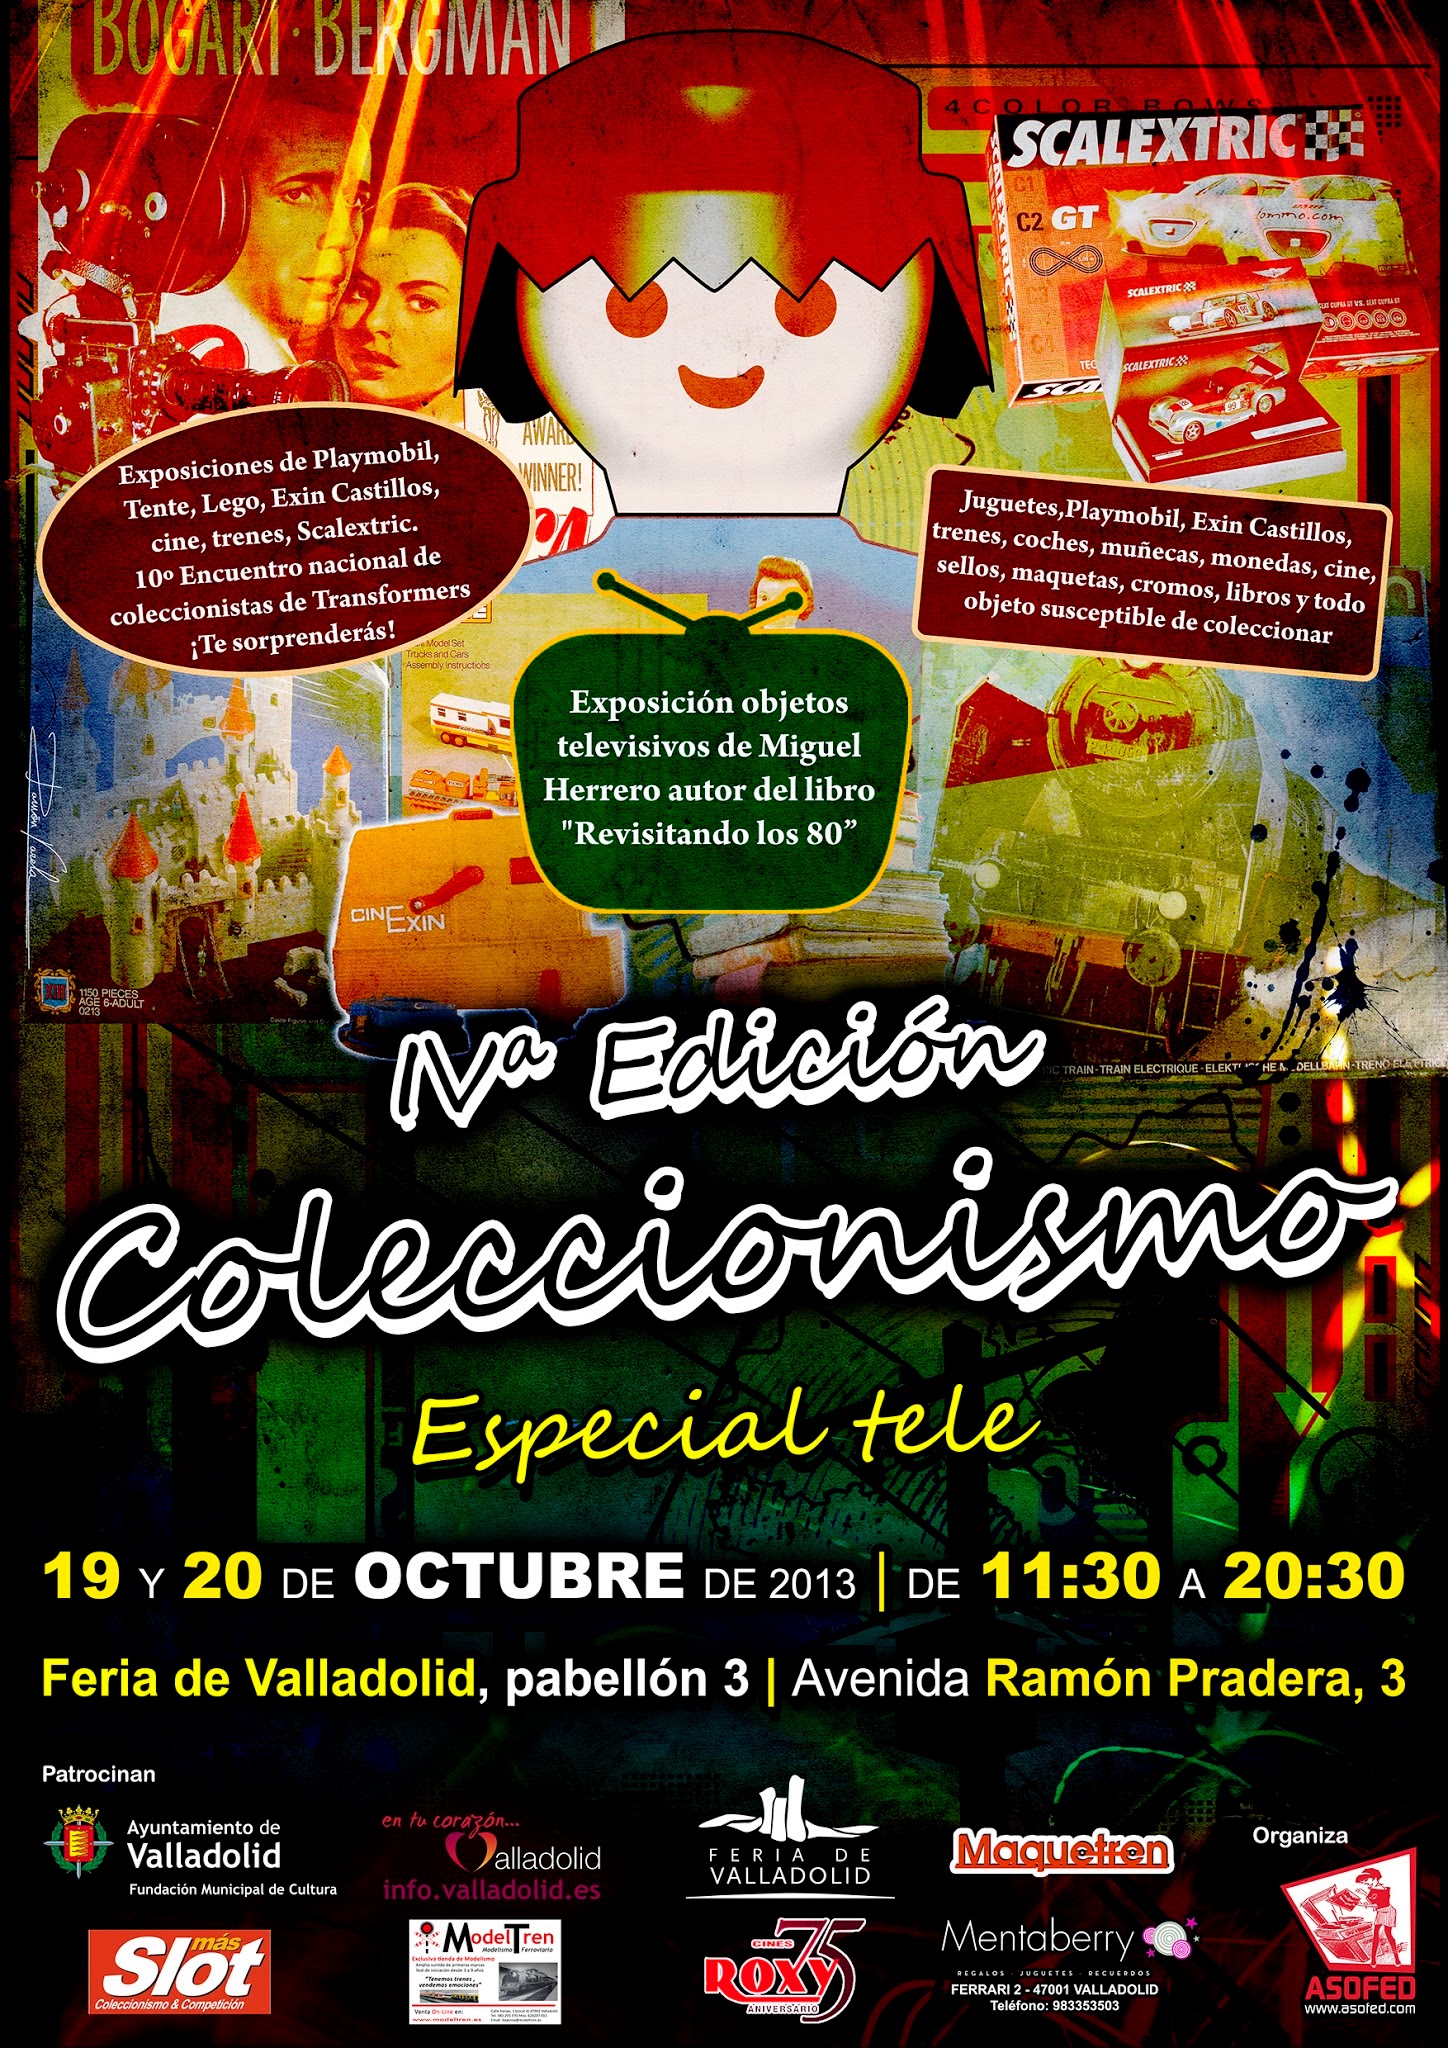 IV Edición de Coleccionismo de Valladolid. Especial TV. Sábado 19 y Domingo 20 de octubre.